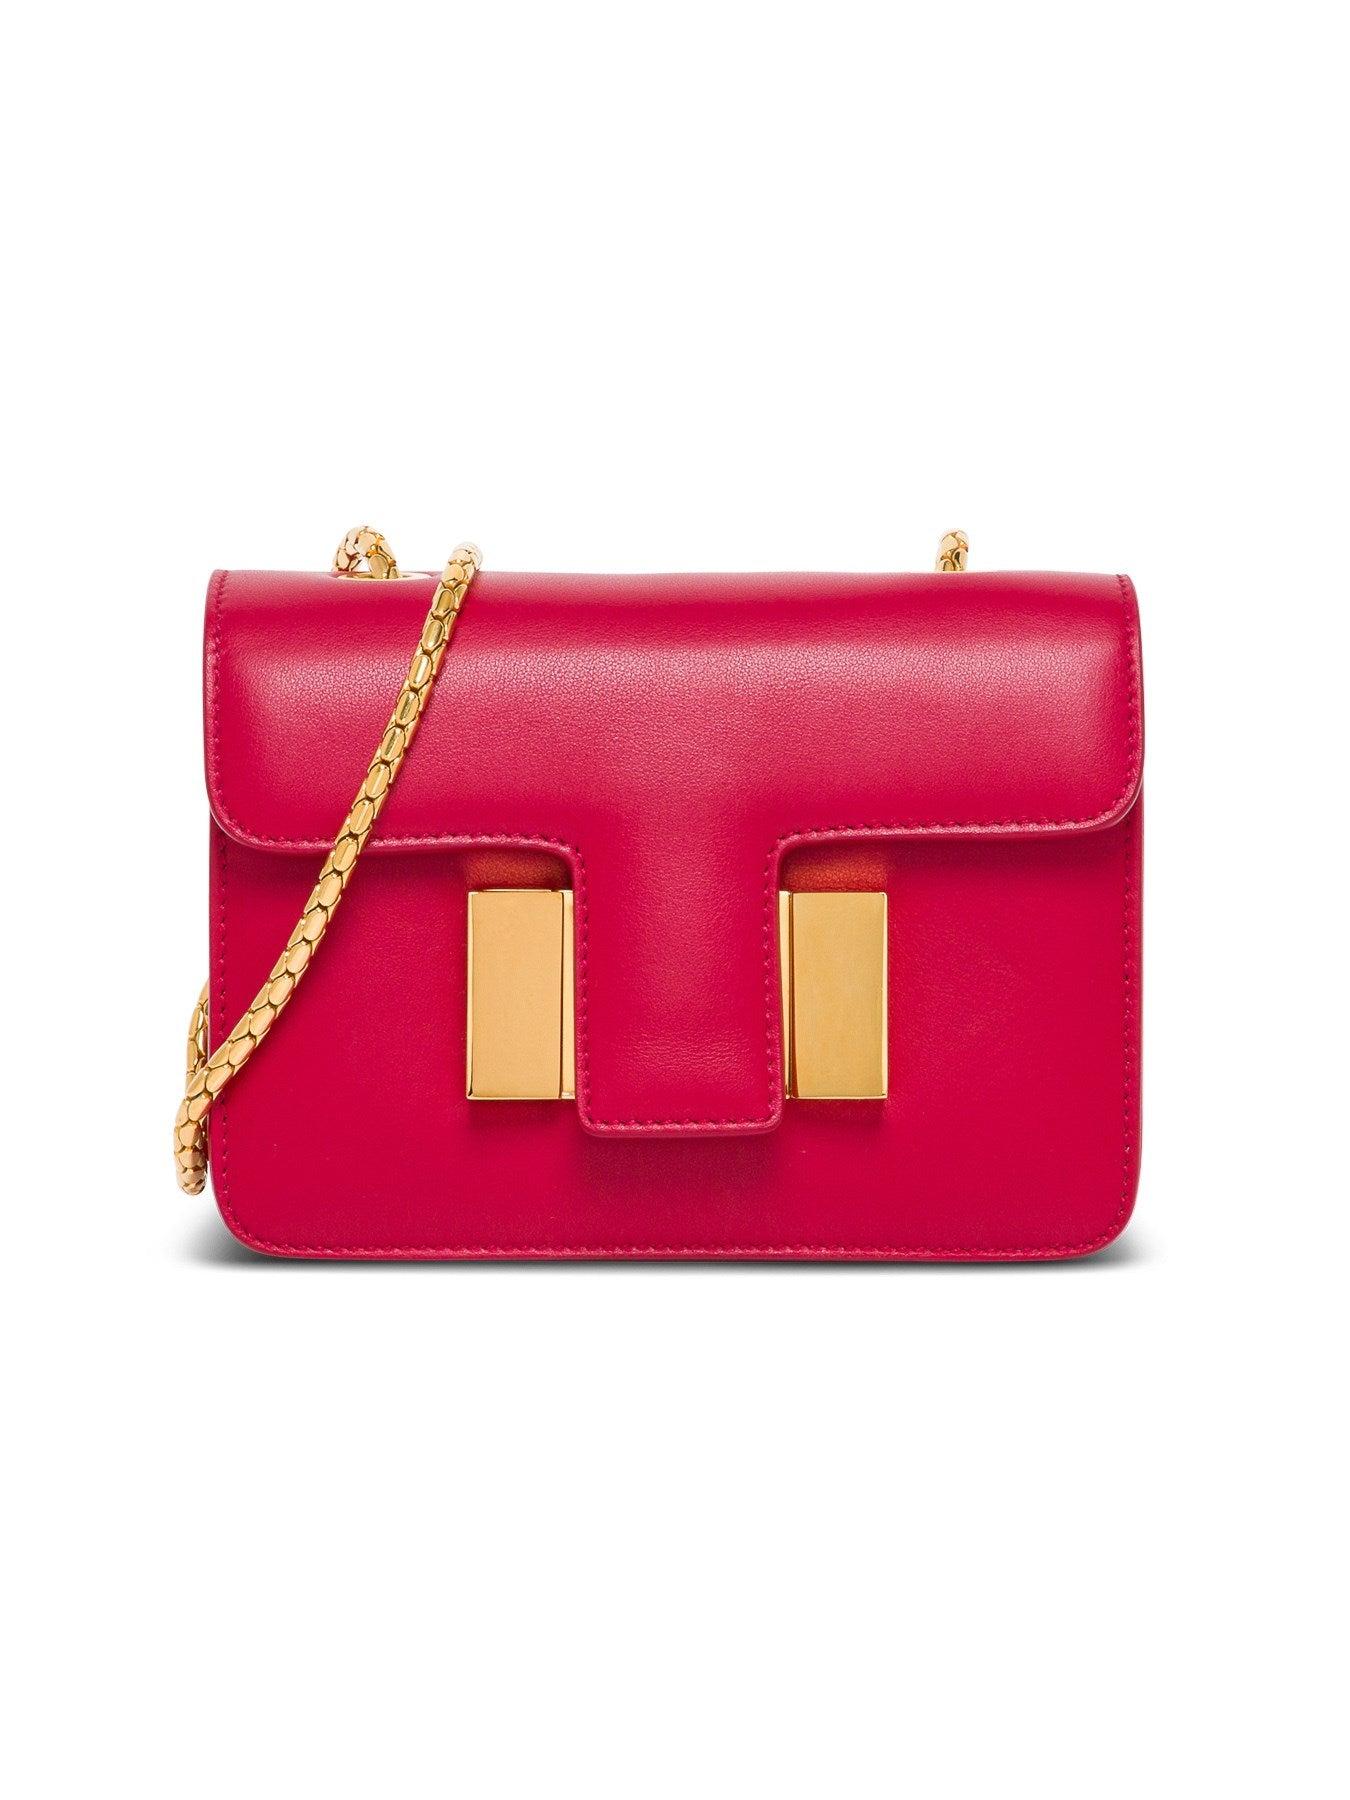 Tom Ford Sienna Medium Crossbody Bag In Leather - Save 6% - Lyst